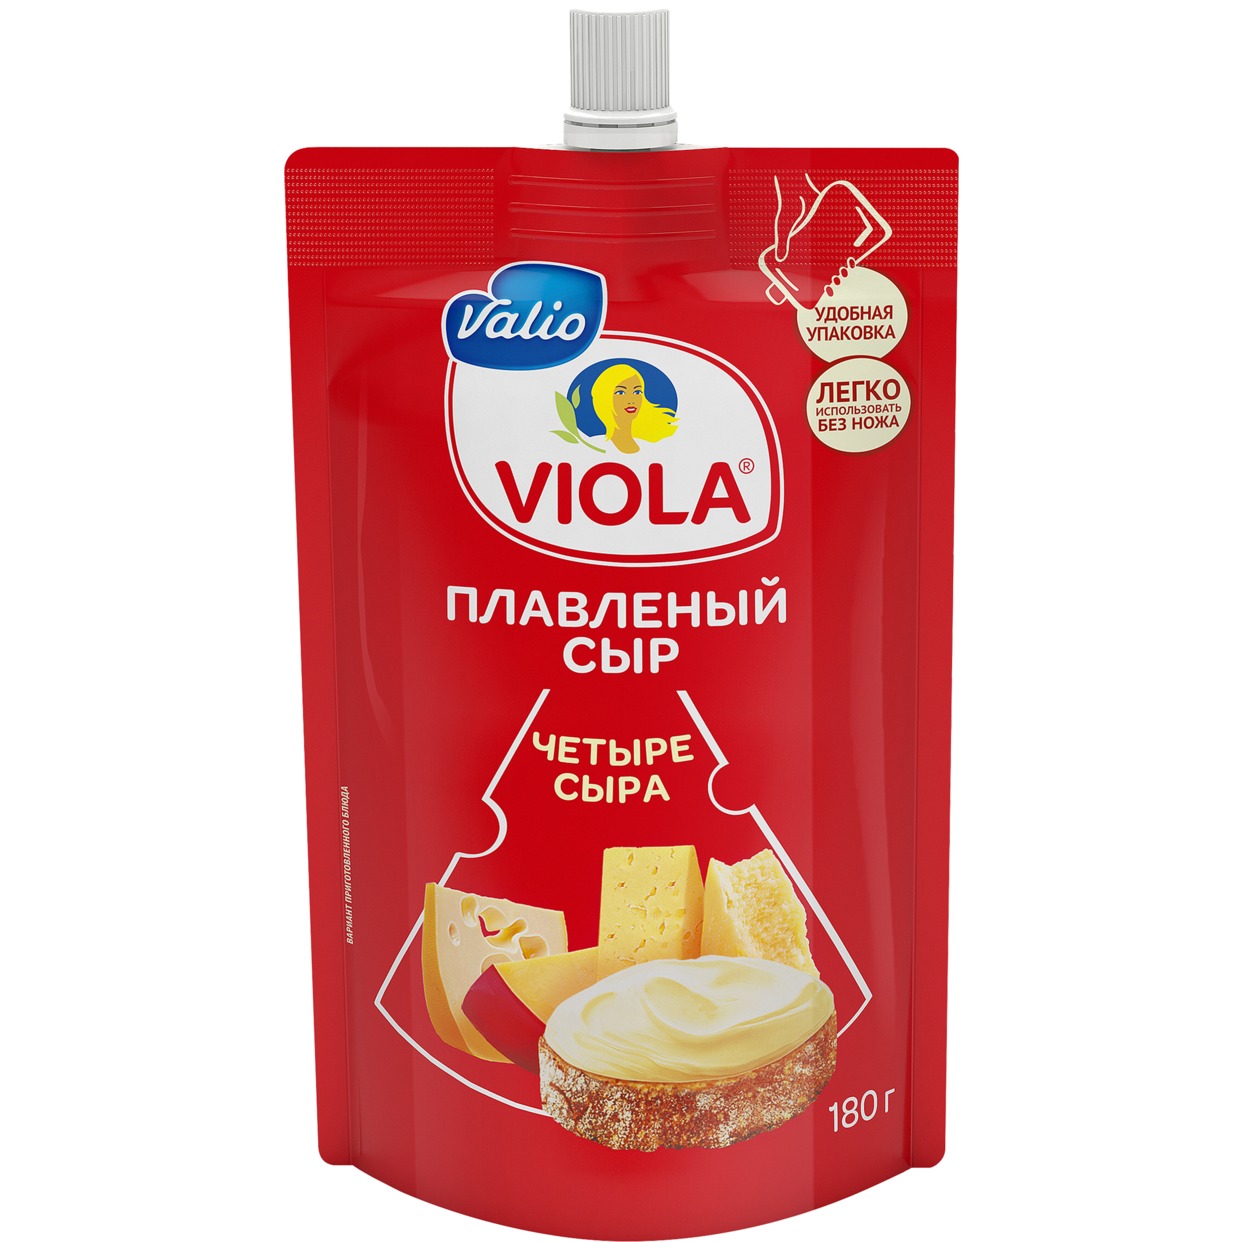 Сыр Виола 4 Сыра, Valio, 180 г по акции в Пятерочке